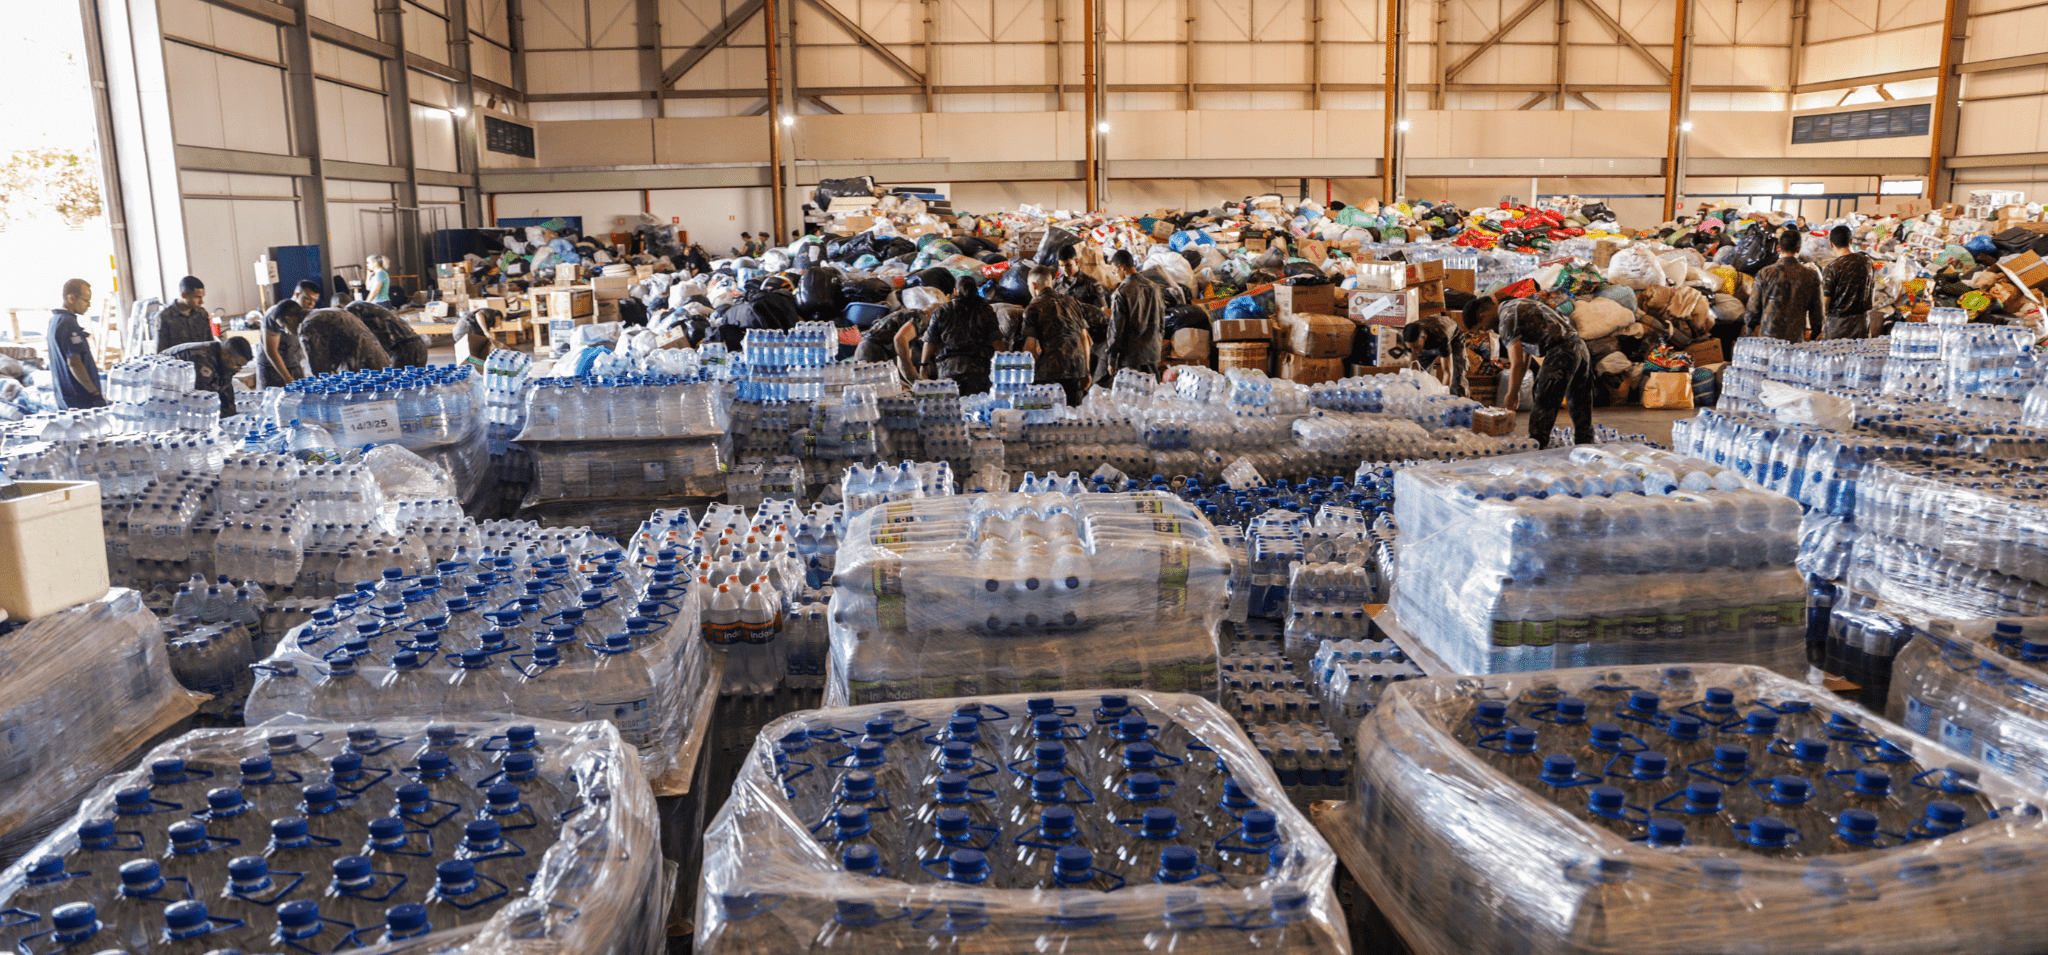 Foto da base aérea de Brasília de recebimento de doações. Registro conta com diversas garrafas d'água à frente do plano, com caixas de alimentos ao fundo. Fim da descrição.